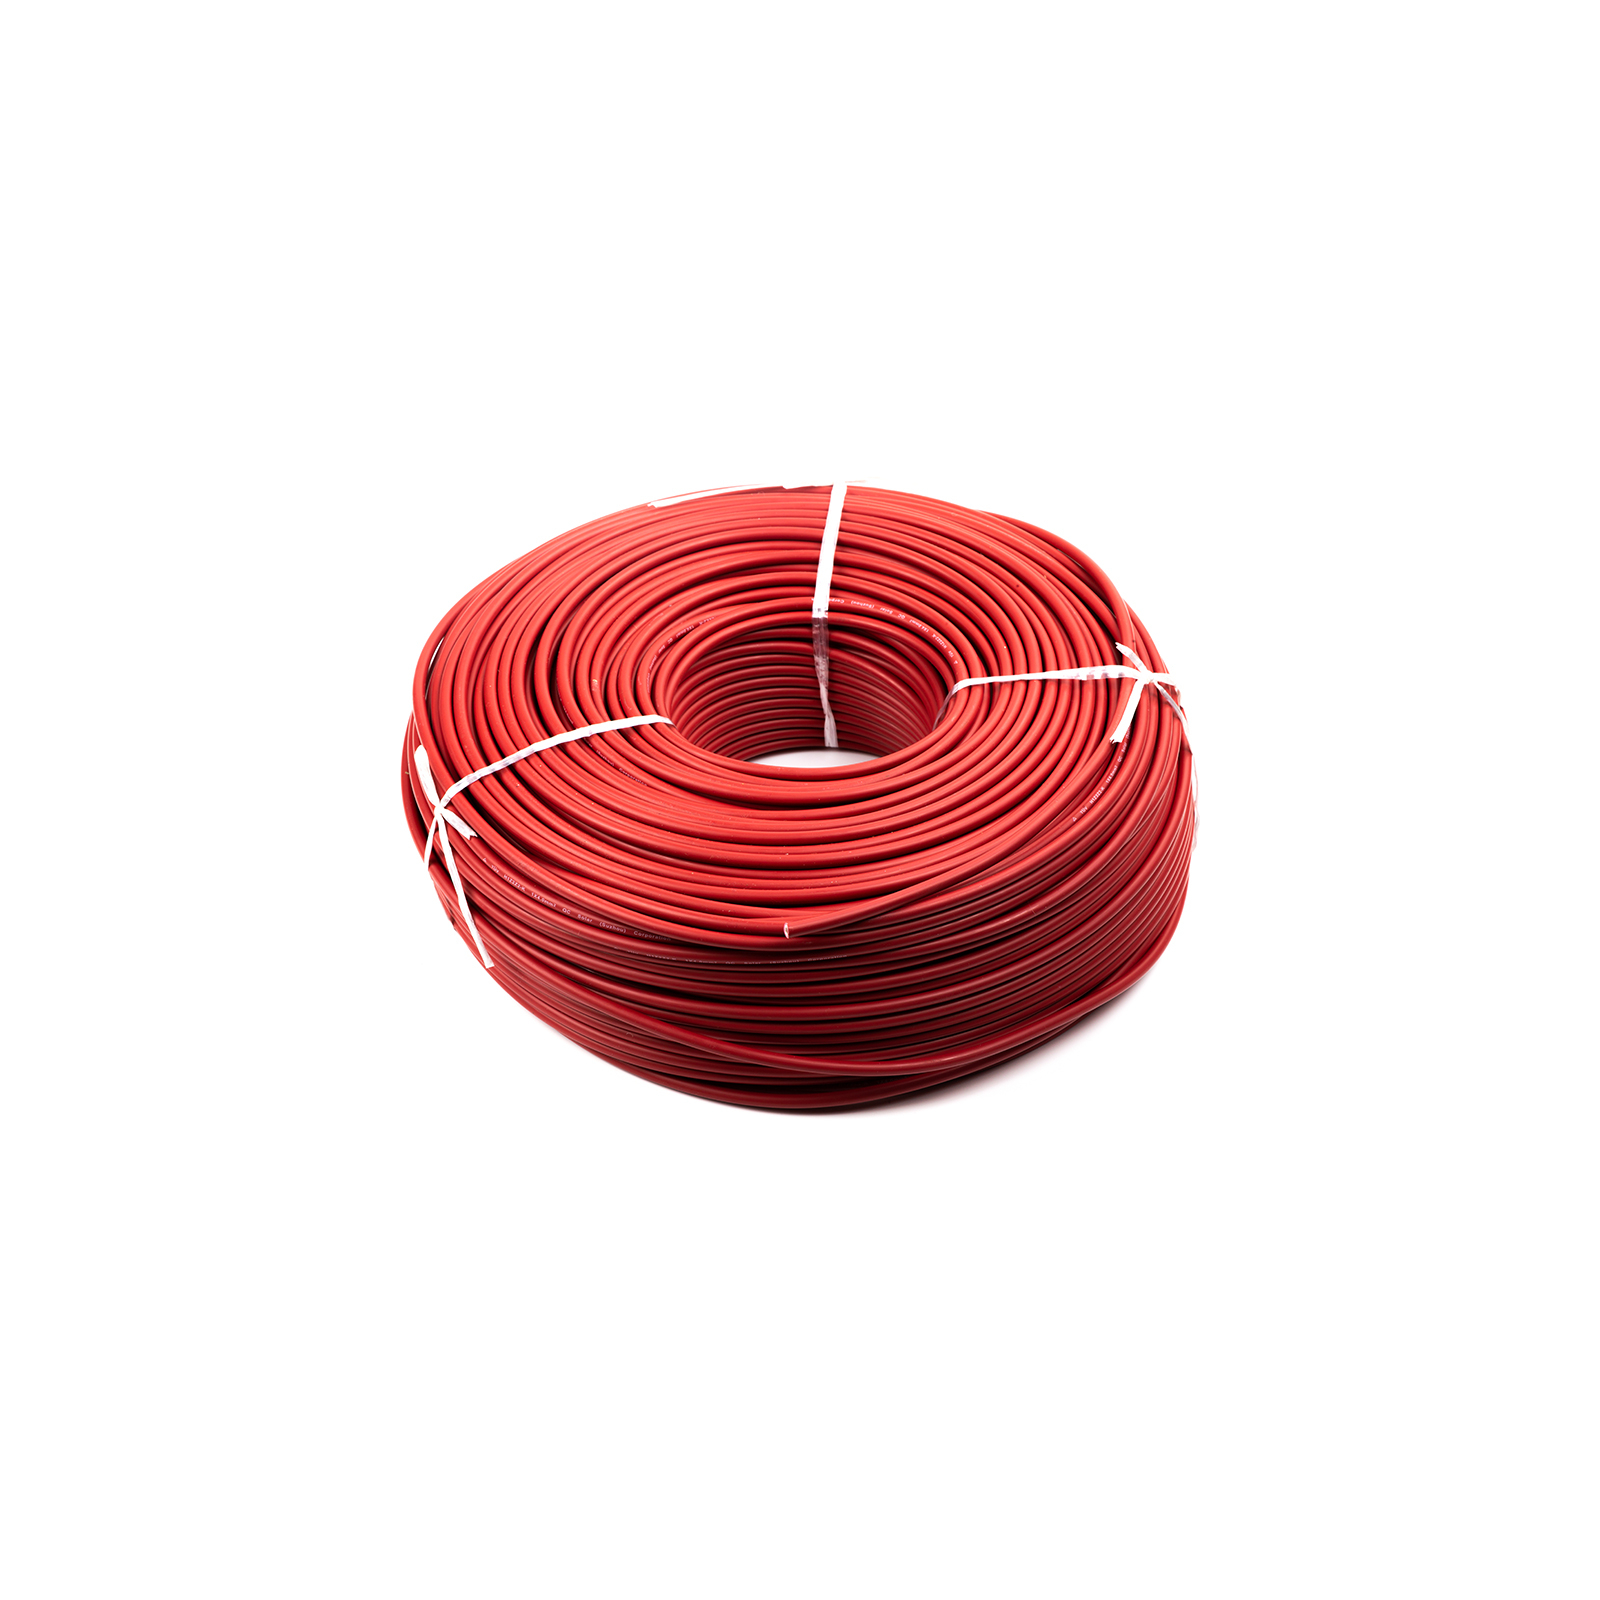 Кабель силовой PV кабель 4 мм, red, 200м=1бхт HiSmart (NV820085)